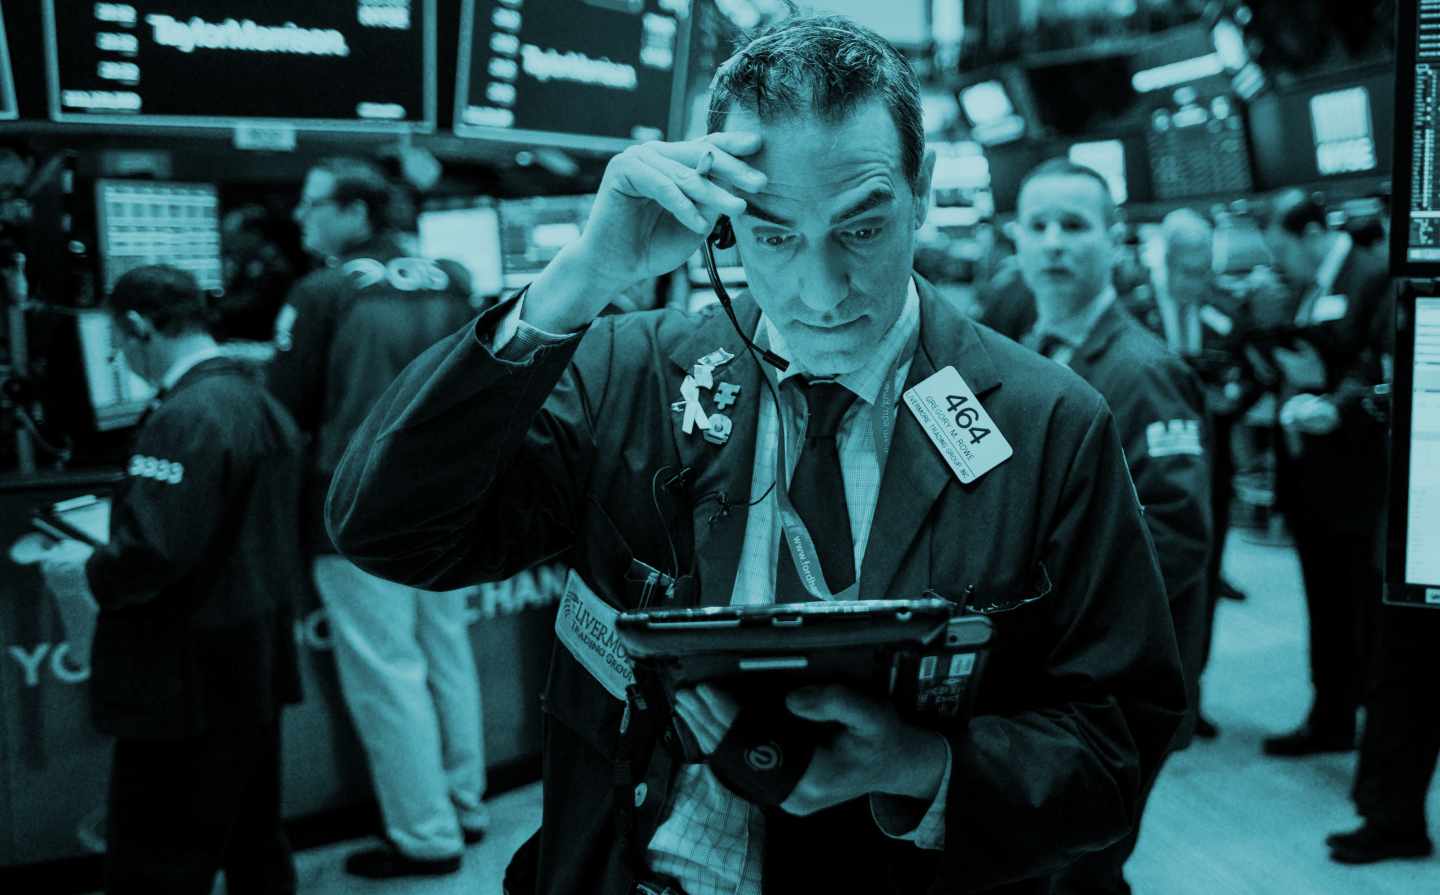 Operadores de bolsa en Wall Street.